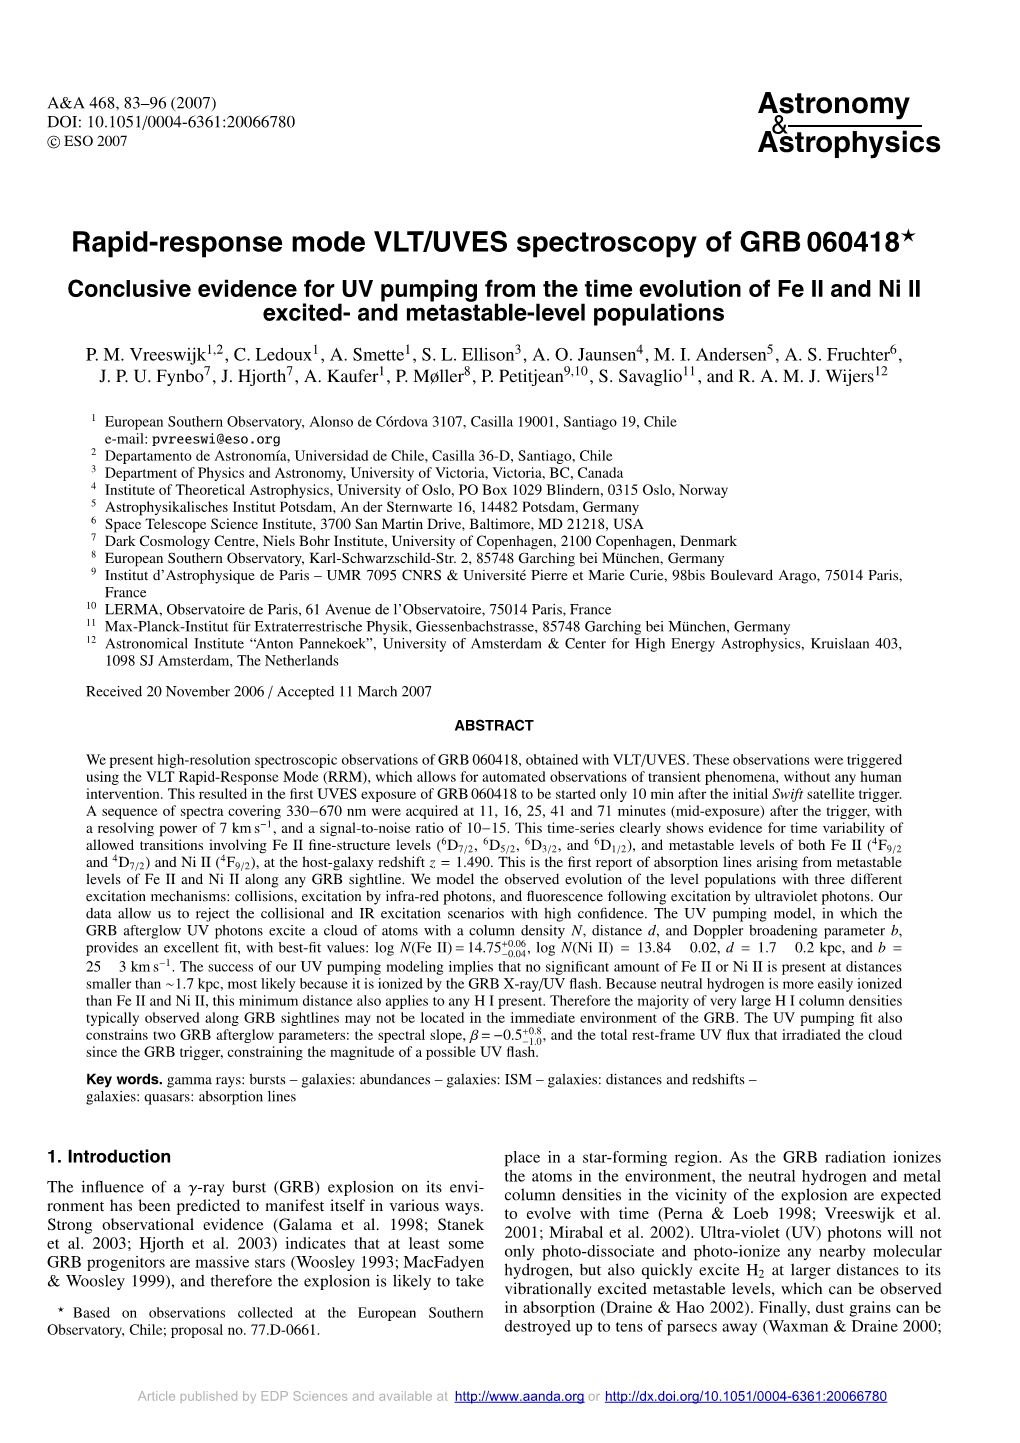 Rapid-Response Mode VLT/UVES Spectroscopy of GRB 060418